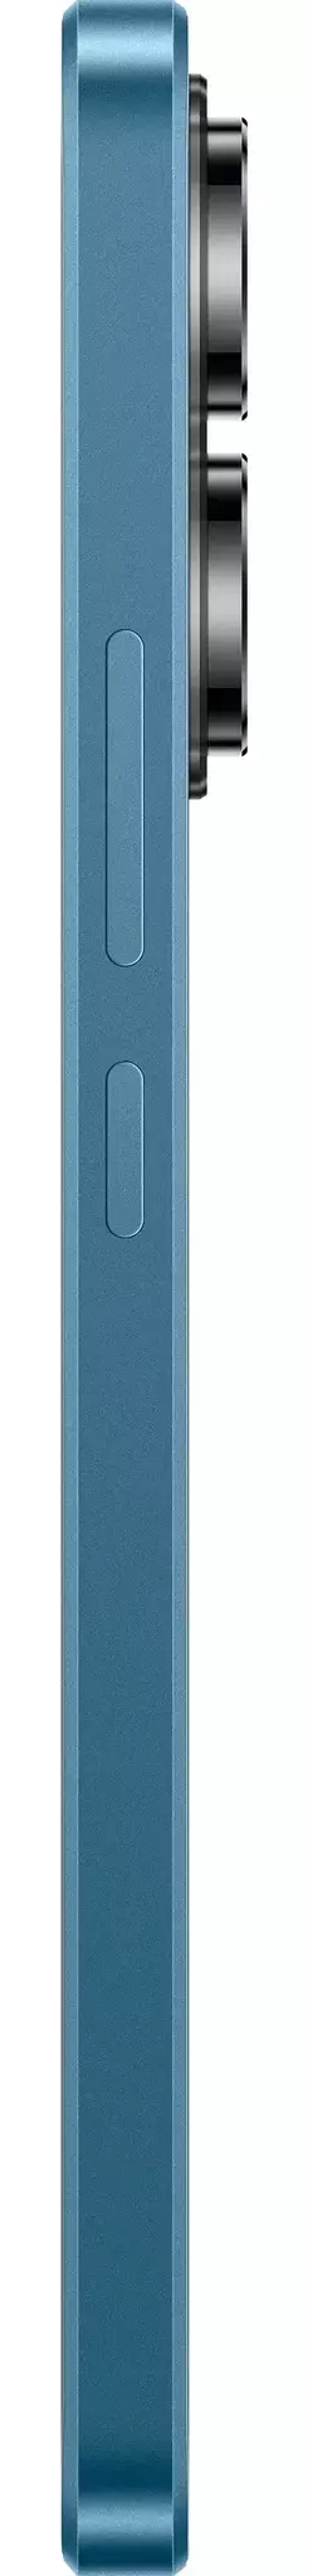 Xiaomi Poco X6 12/512Gb Blue (Синий)